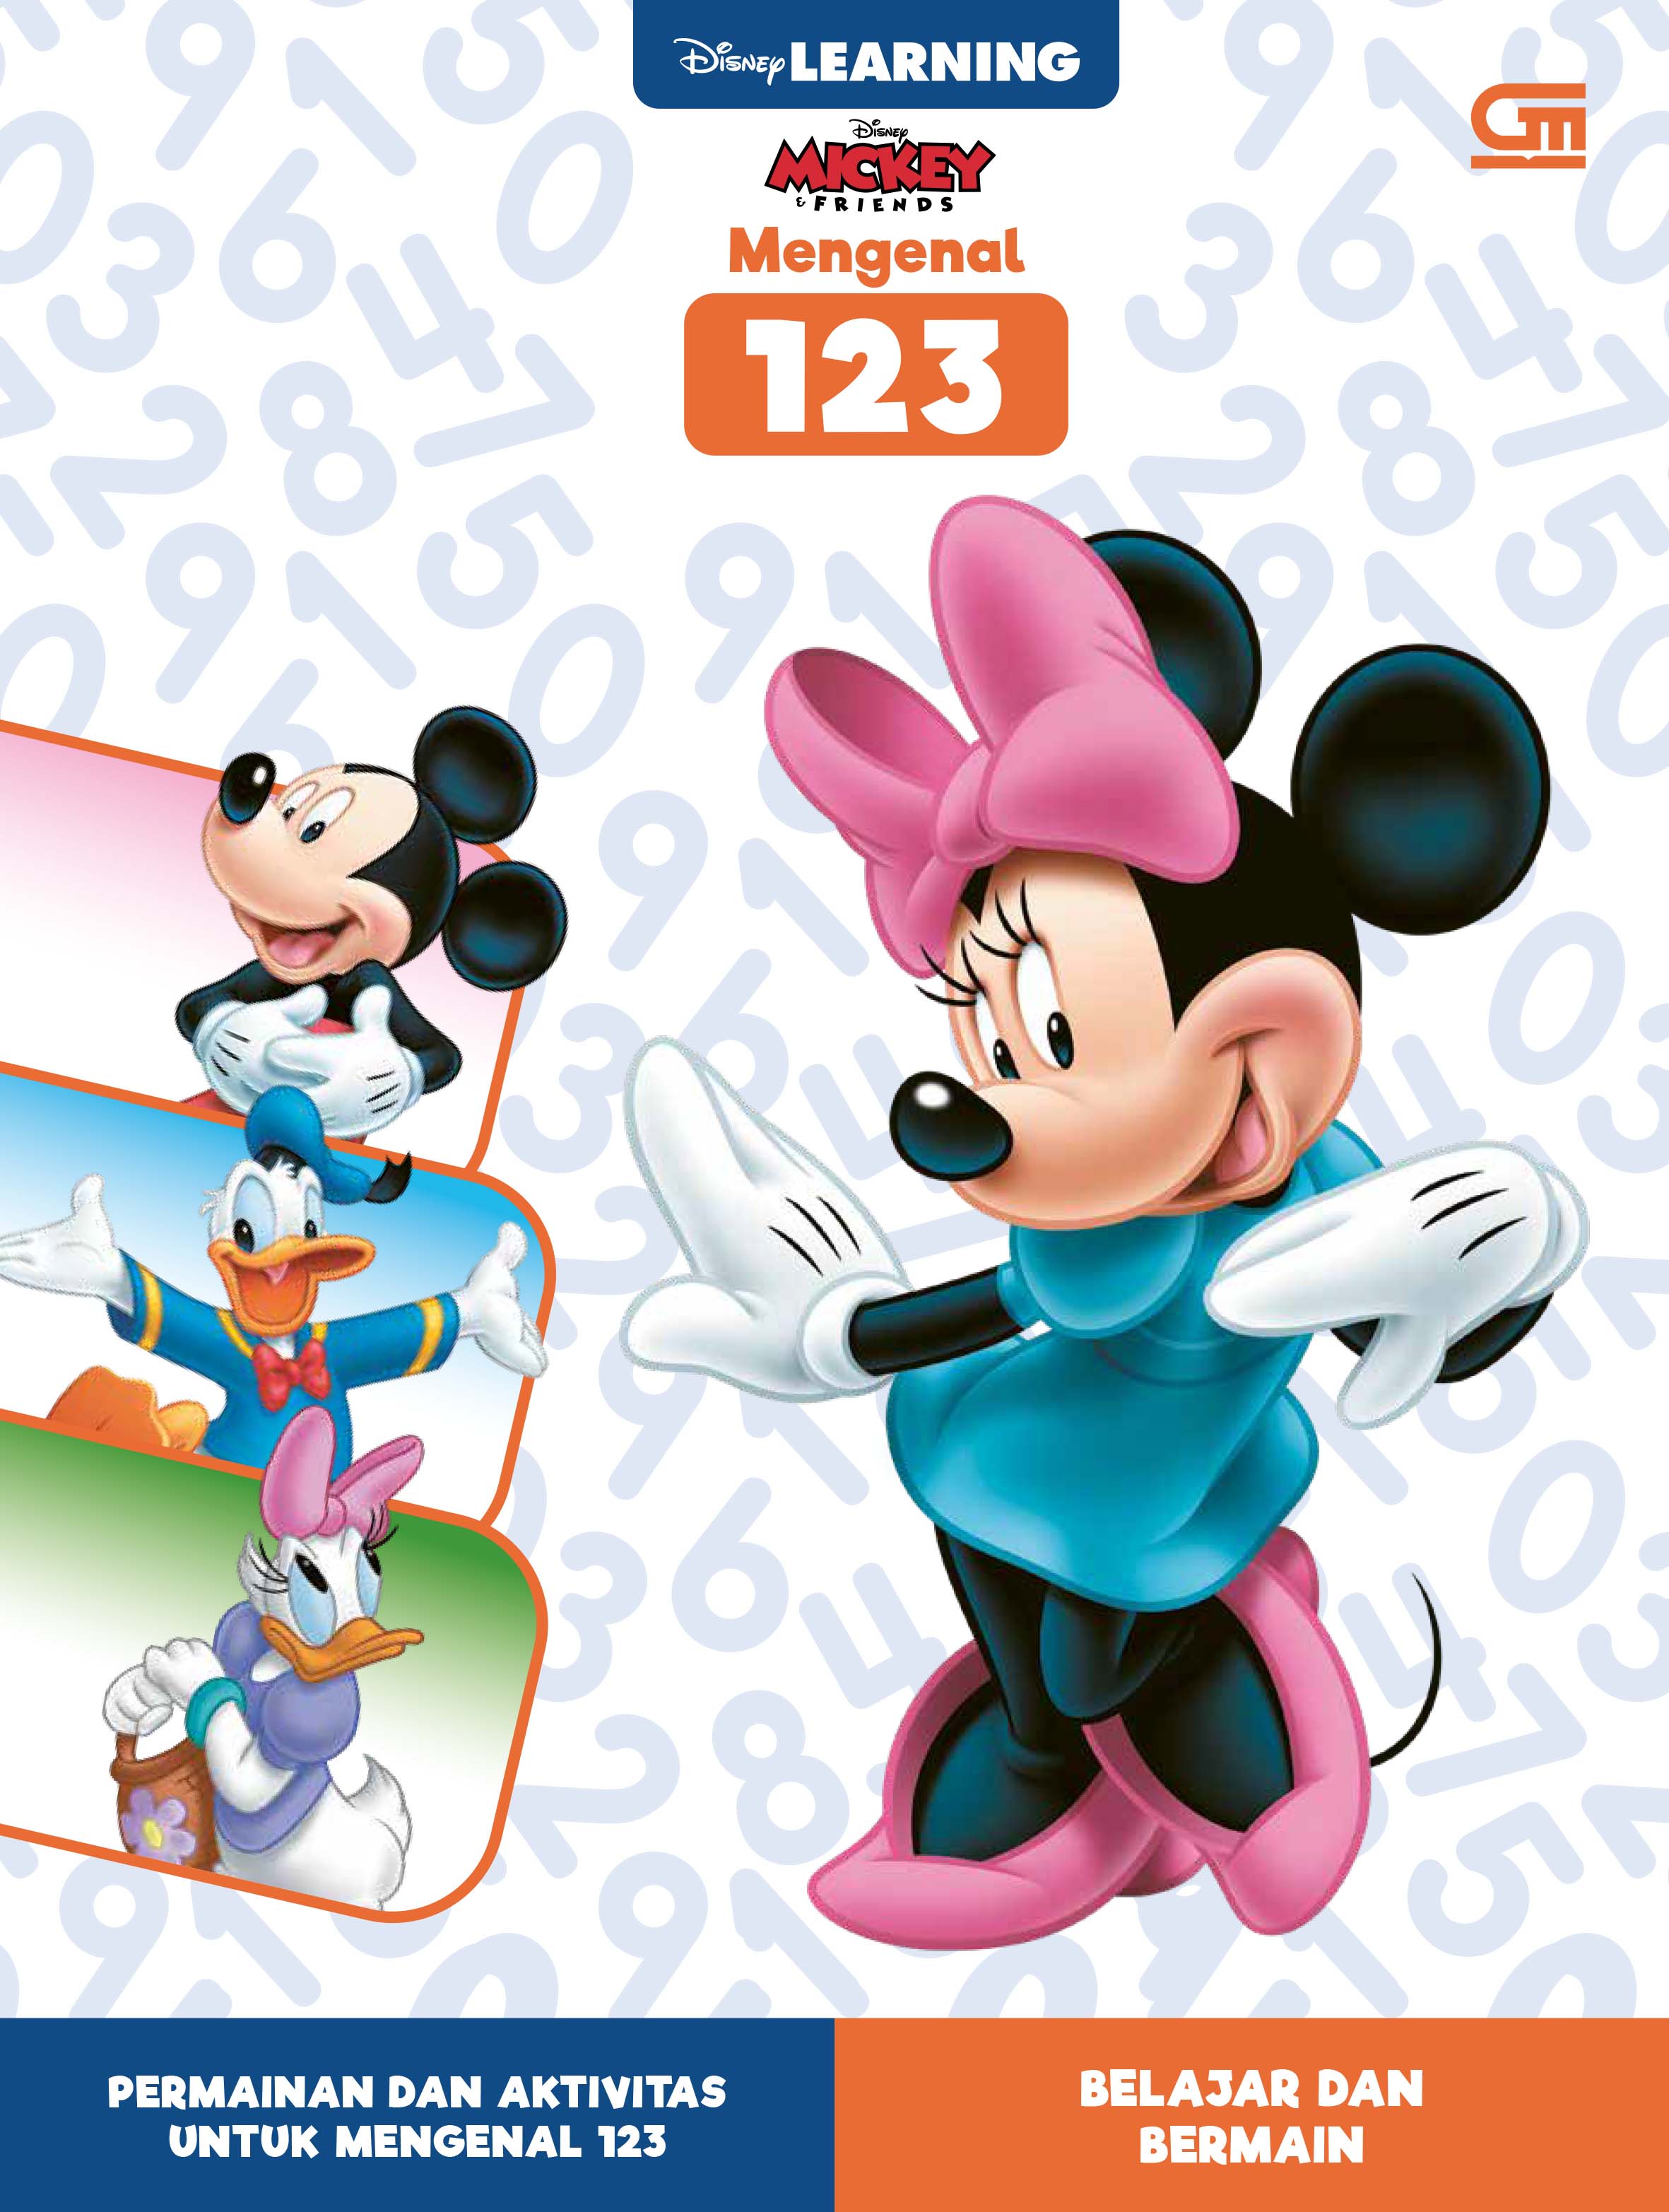 Disney Learning: Disney Mickey & Friends Mengenal 123